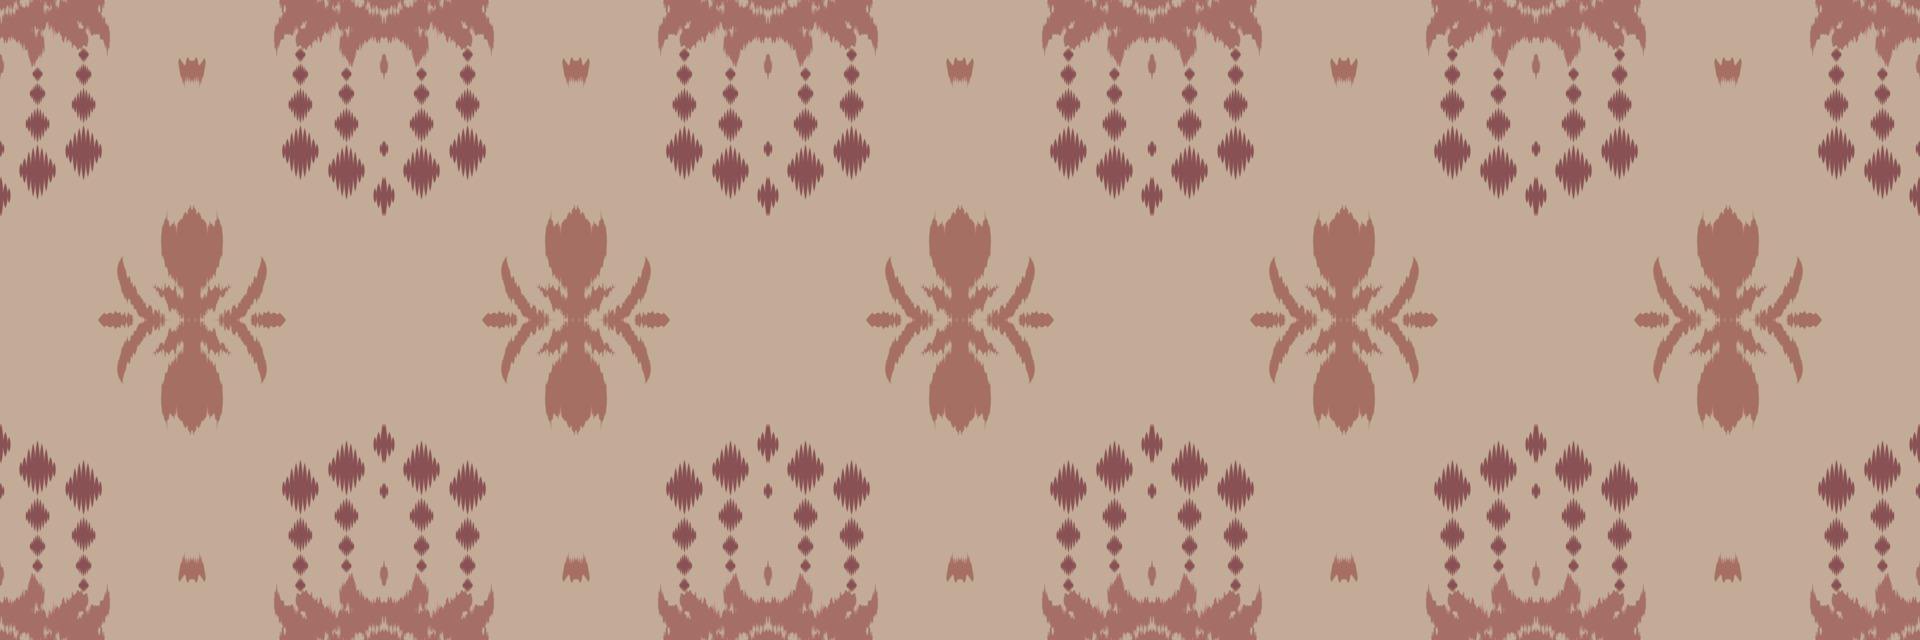 ikat projeta padrão sem emenda de chevron tribal. étnico geométrico batik ikkat design têxtil de vetor digital para estampas tecido saree mughal pincel símbolo faixas textura kurti kurtis kurtas